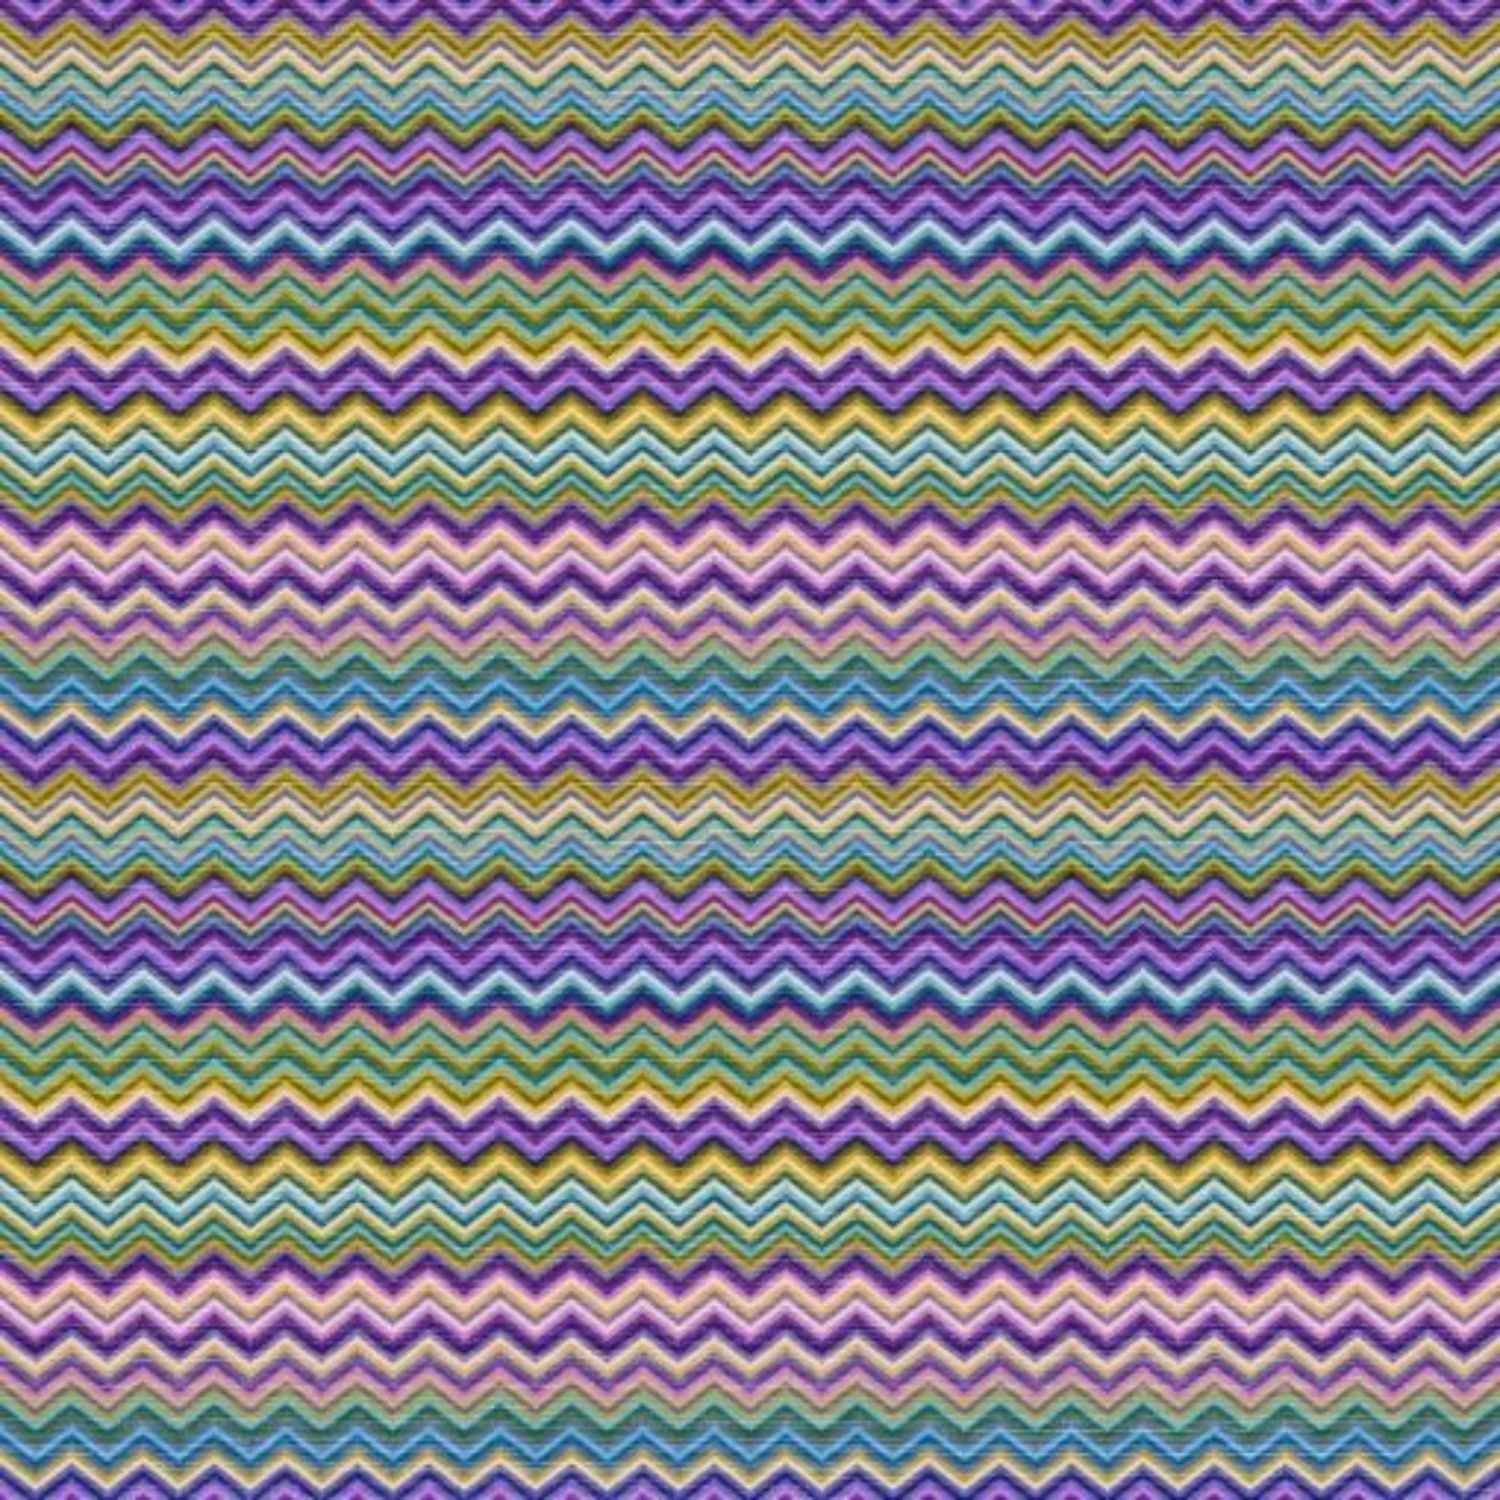 baia-lilla-copripiumino-puro-cotone-quadrifoglio-geometrico-zig-zag-chevron-viola-azzurro-rosa-verde-giallo-multicolor-pattern